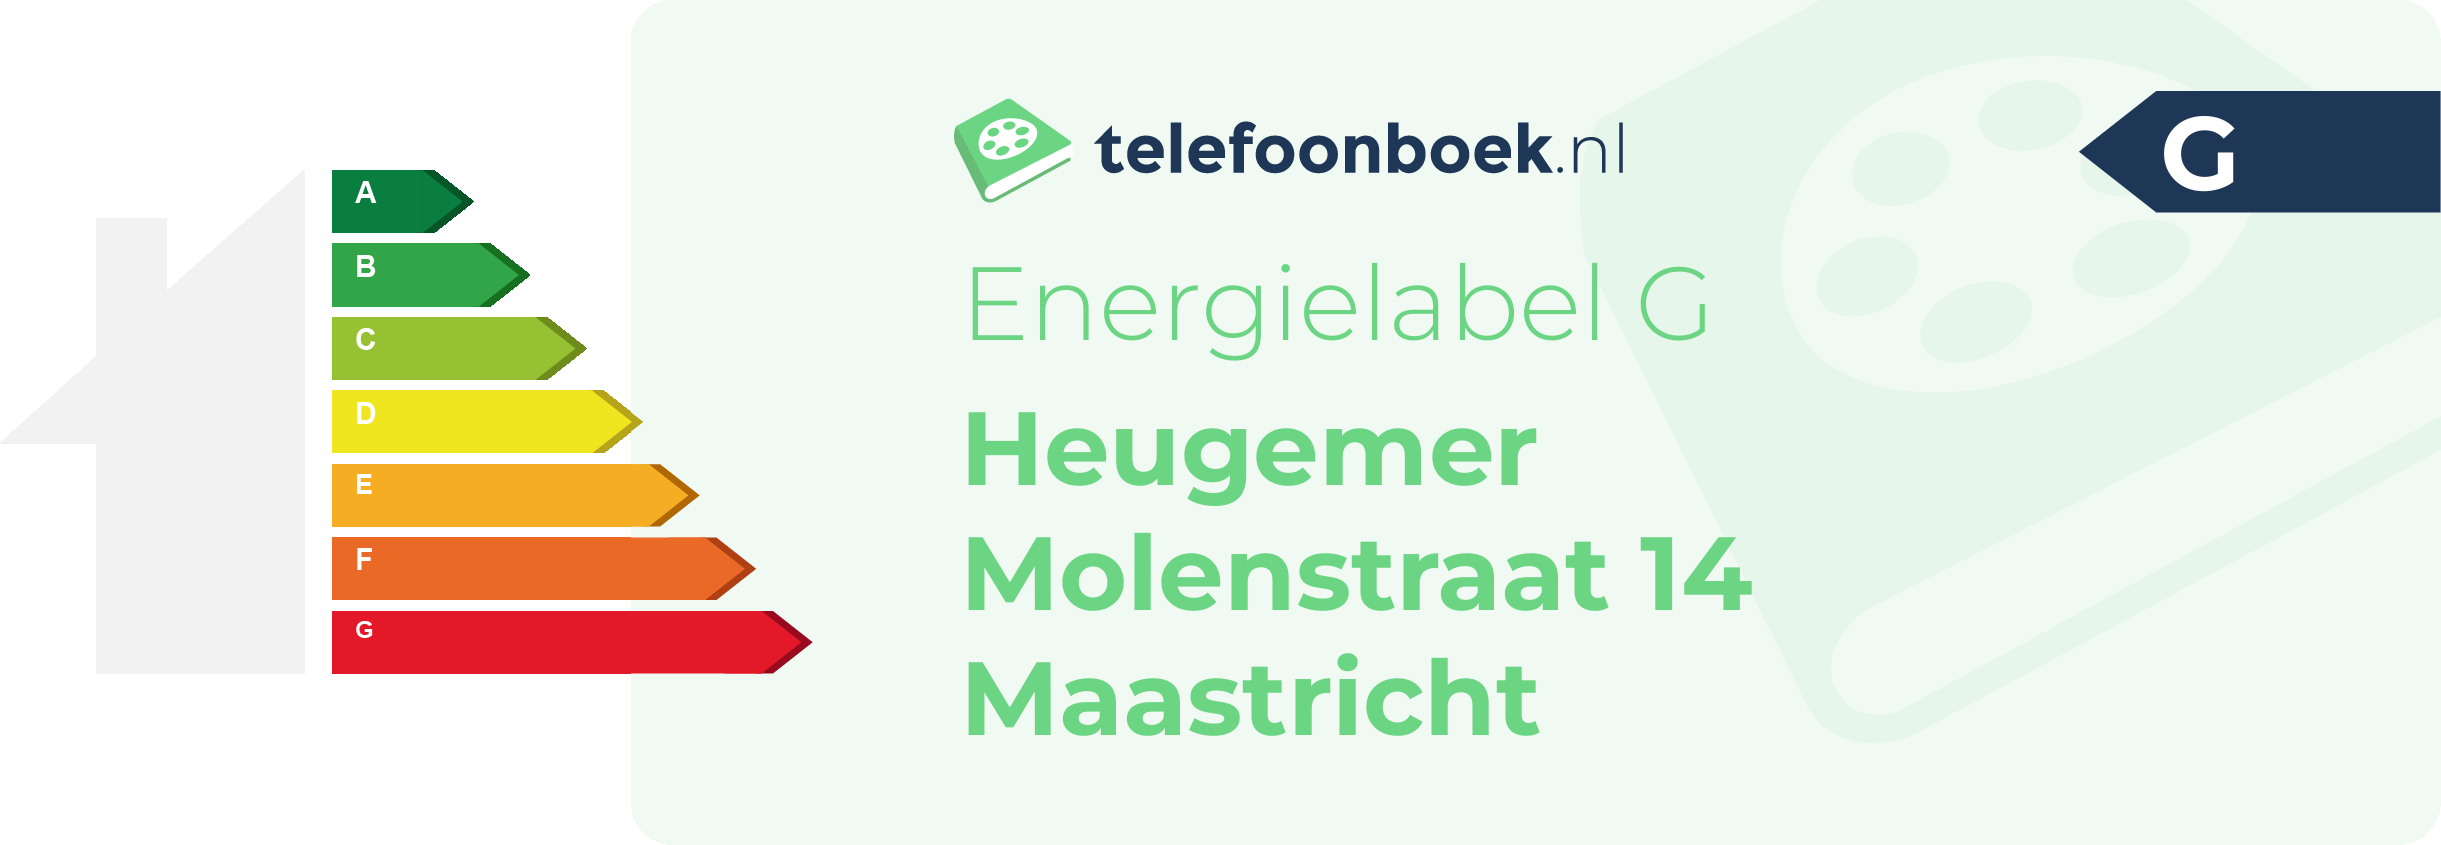 Energielabel Heugemer Molenstraat 14 Maastricht